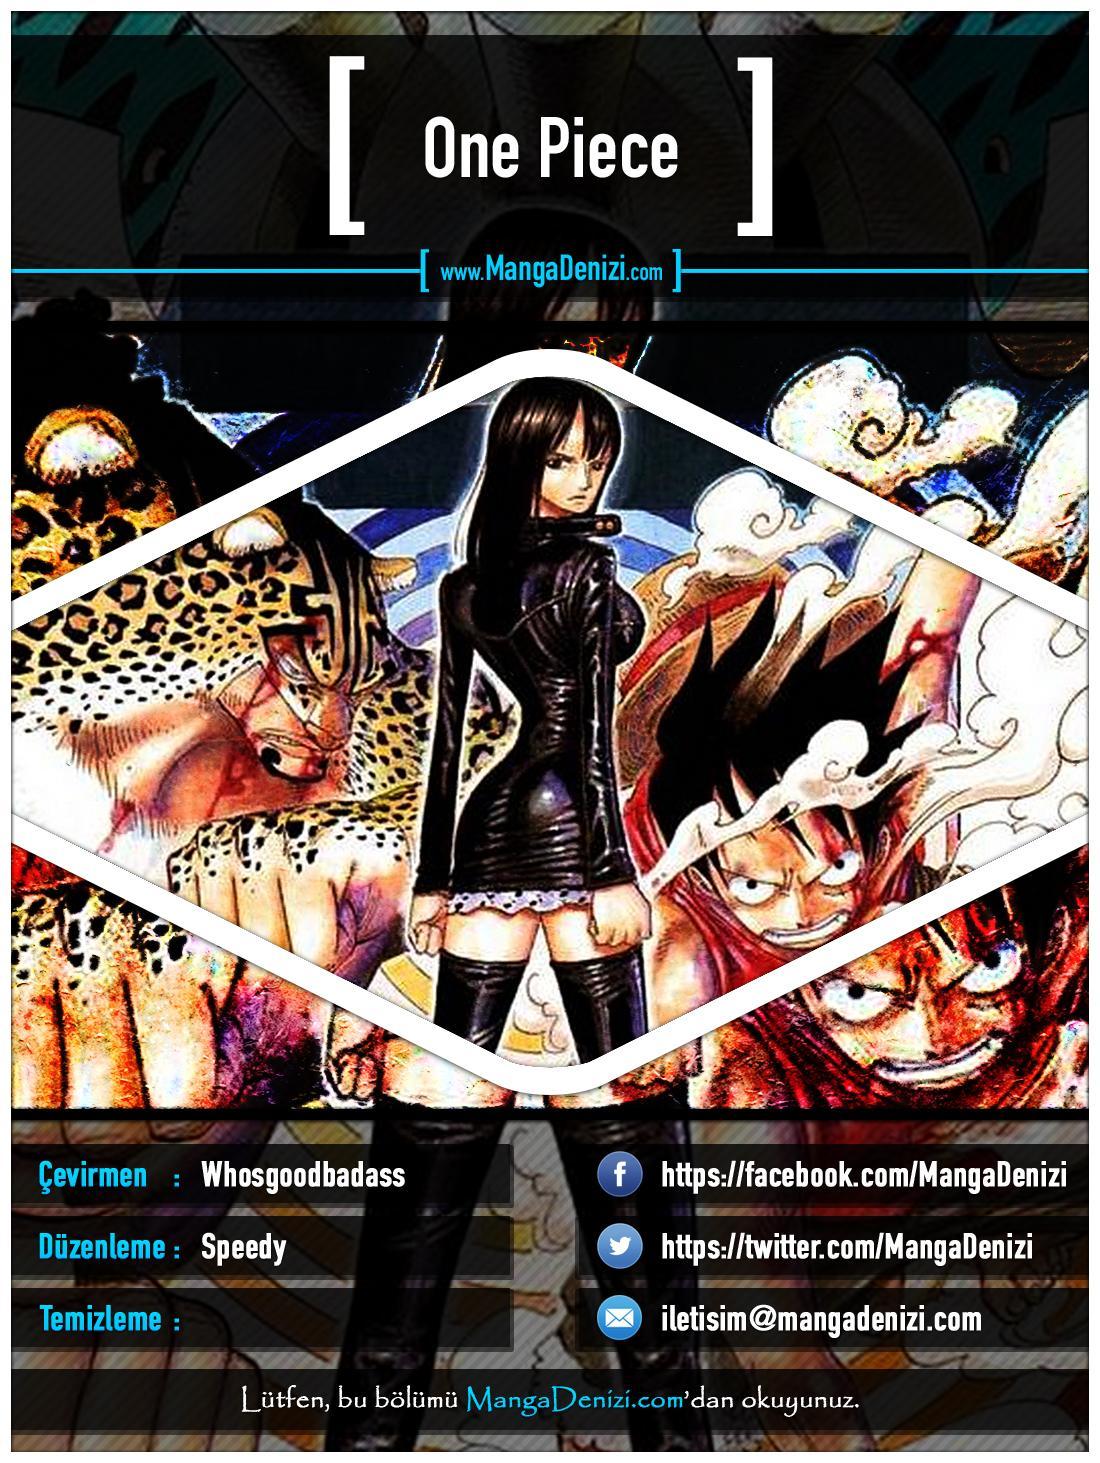 One Piece [Renkli] mangasının 0382 bölümünün 1. sayfasını okuyorsunuz.